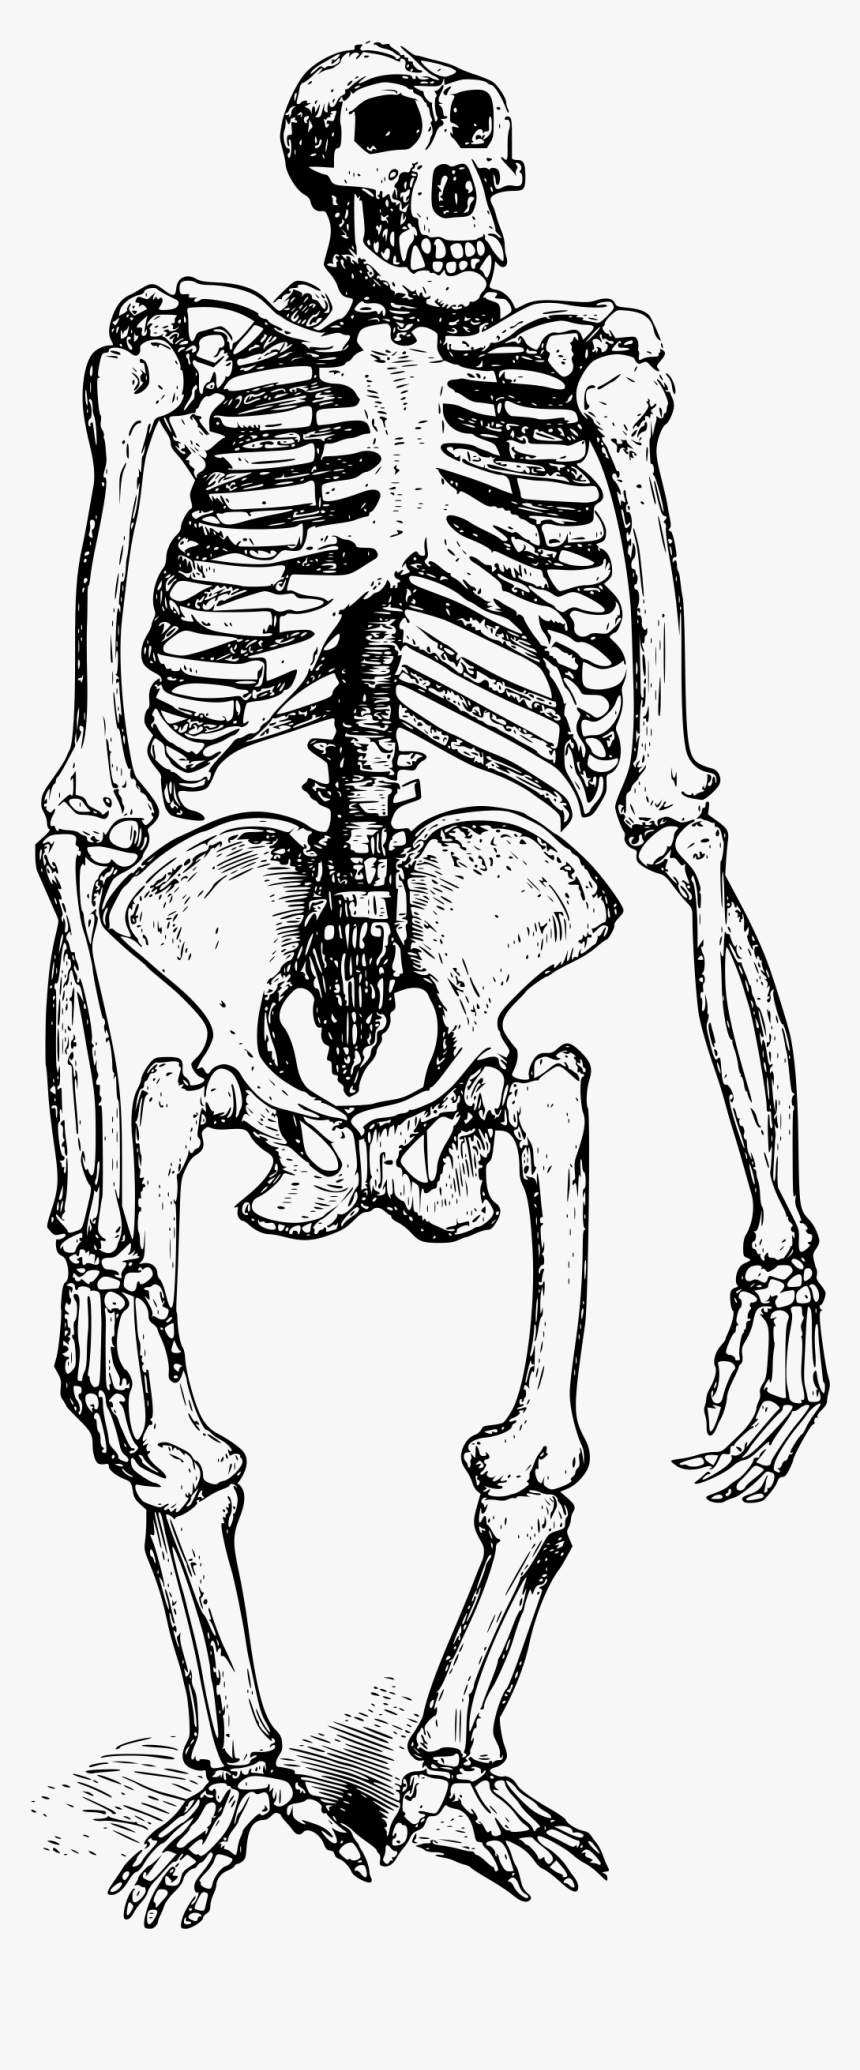 Skeleton Big Image Png - Gorilla Skeleton Png, Transparent Png, Free Download